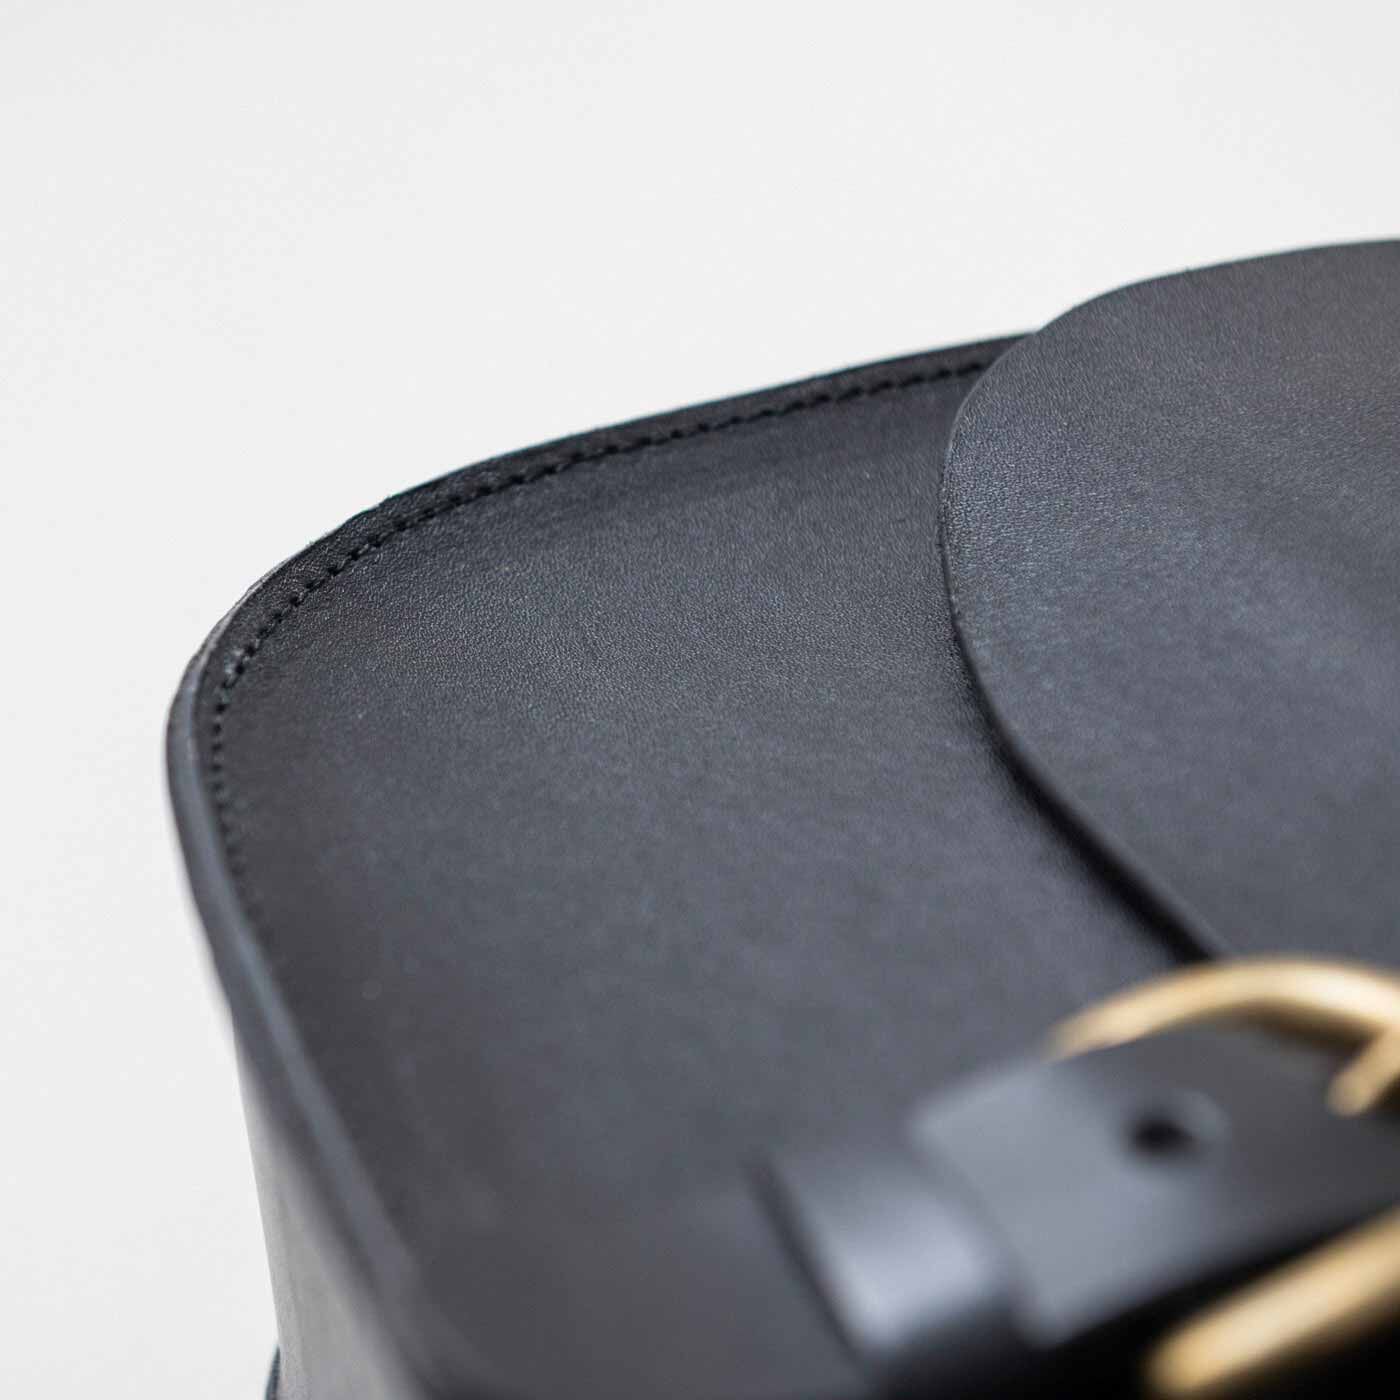 ＆Stories|福岡の鞄作家と作った　職人本革のフォートバッグ〈ブラック〉|縁部分カーブの美しさもこの鞄の魅力です。